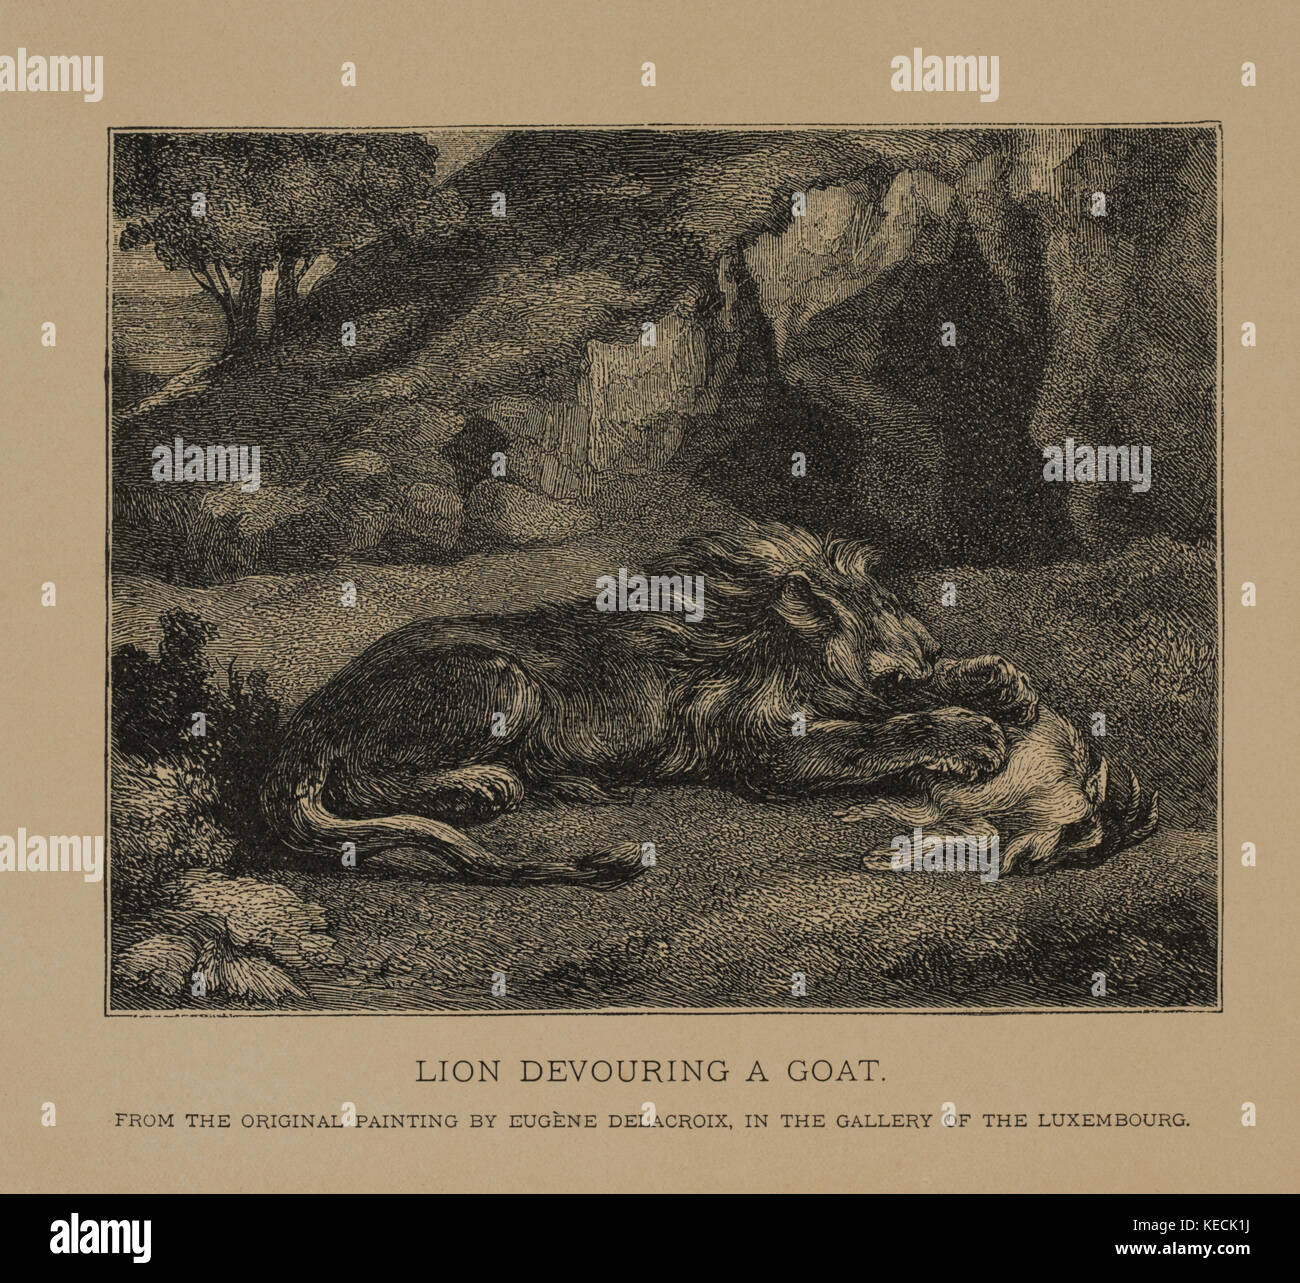 Lion devouring a Goat, Woodcut incisione dalla pittura originale di Eugène Delacroix i capolavori dell'arte francese di Louis Viardot, pubblicato da Gravure Gooupil et Cie, Parigi, 1882, Gebbie & Co., Philadelphia, 1883 Foto Stock